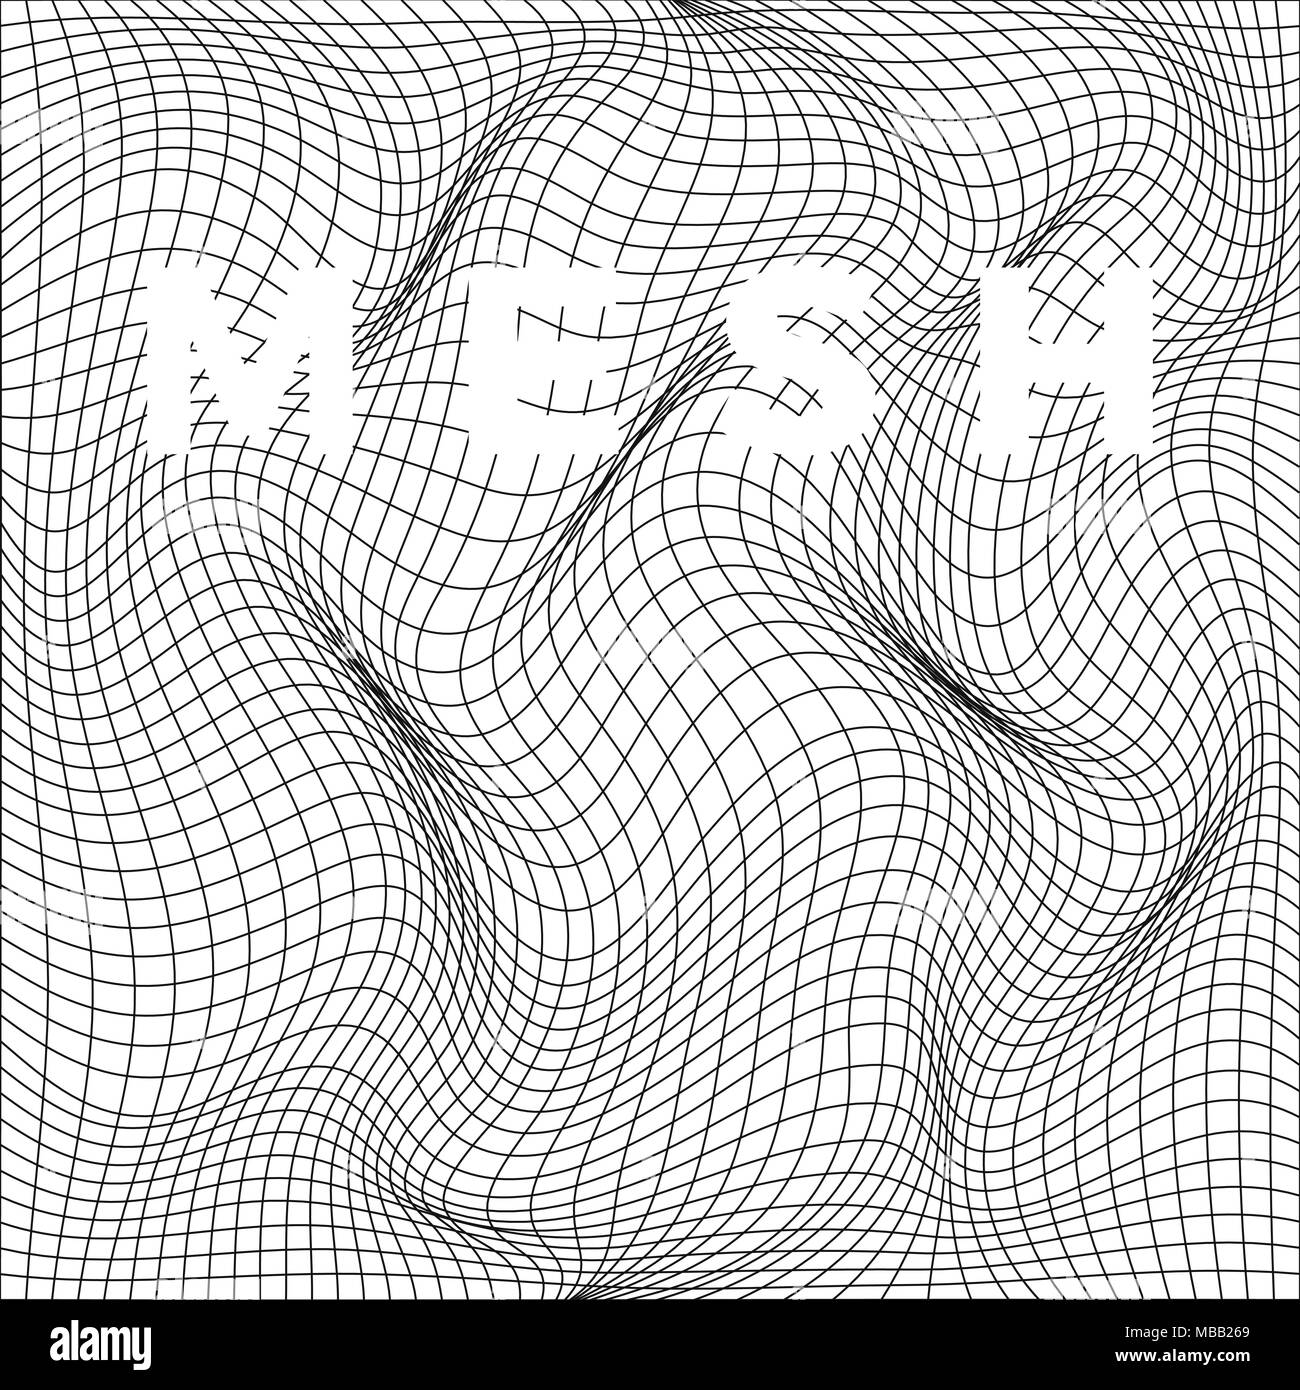 Abstrakte Verformung der Net. Wellenförmige Netzstruktur. Vector Illustration auf weißem Hintergrund Stock Vektor